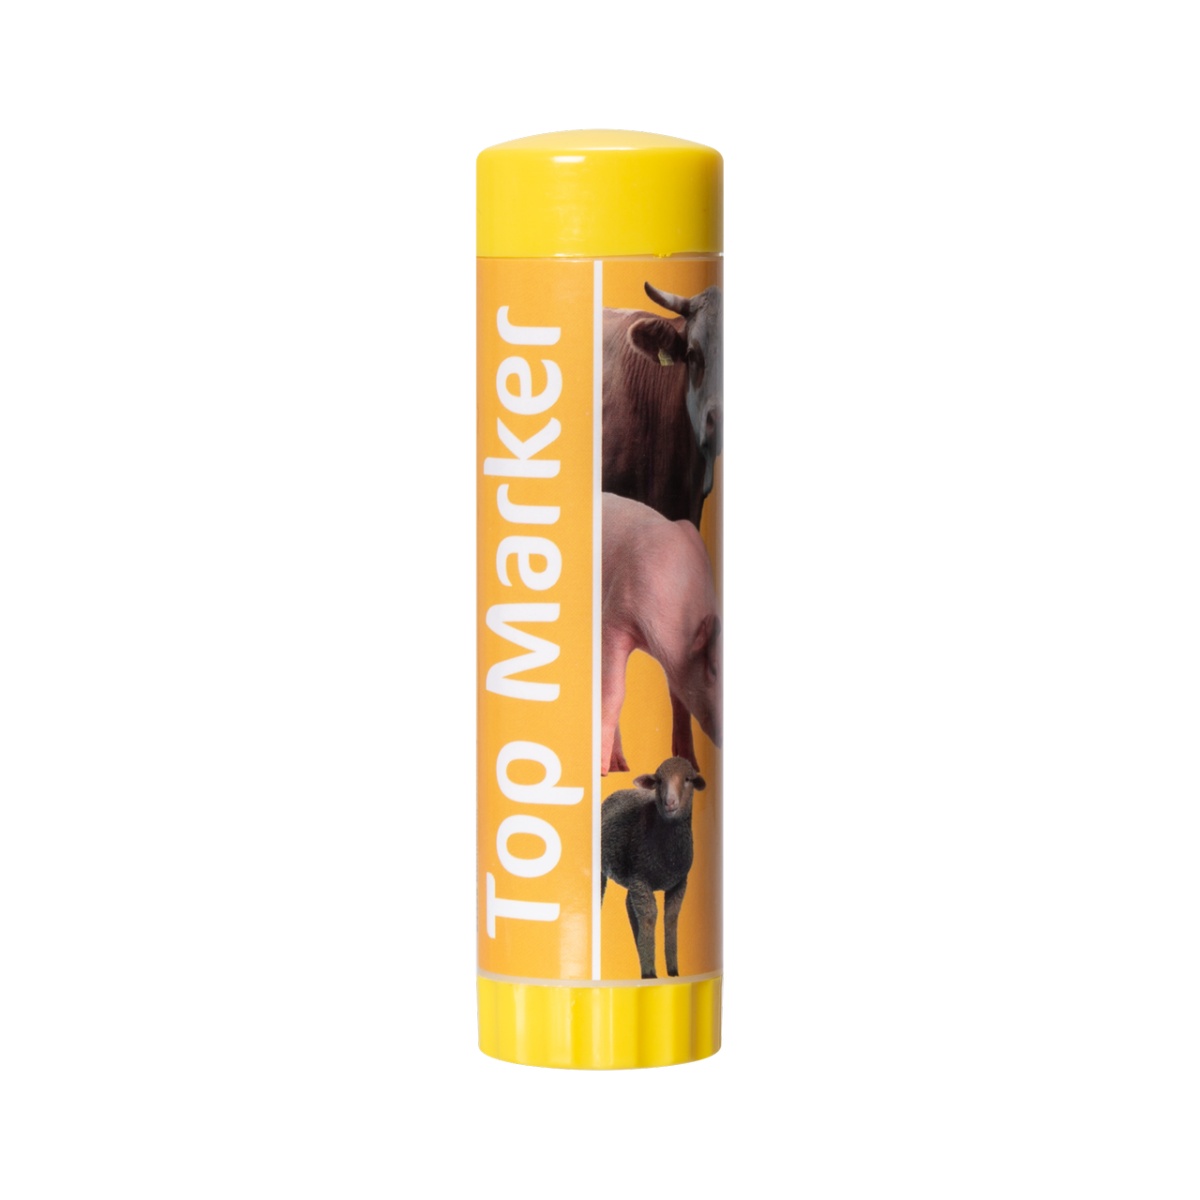 Creion galben pentru marcarea animalelor pe termen scurt, TopMarker, 60 ml